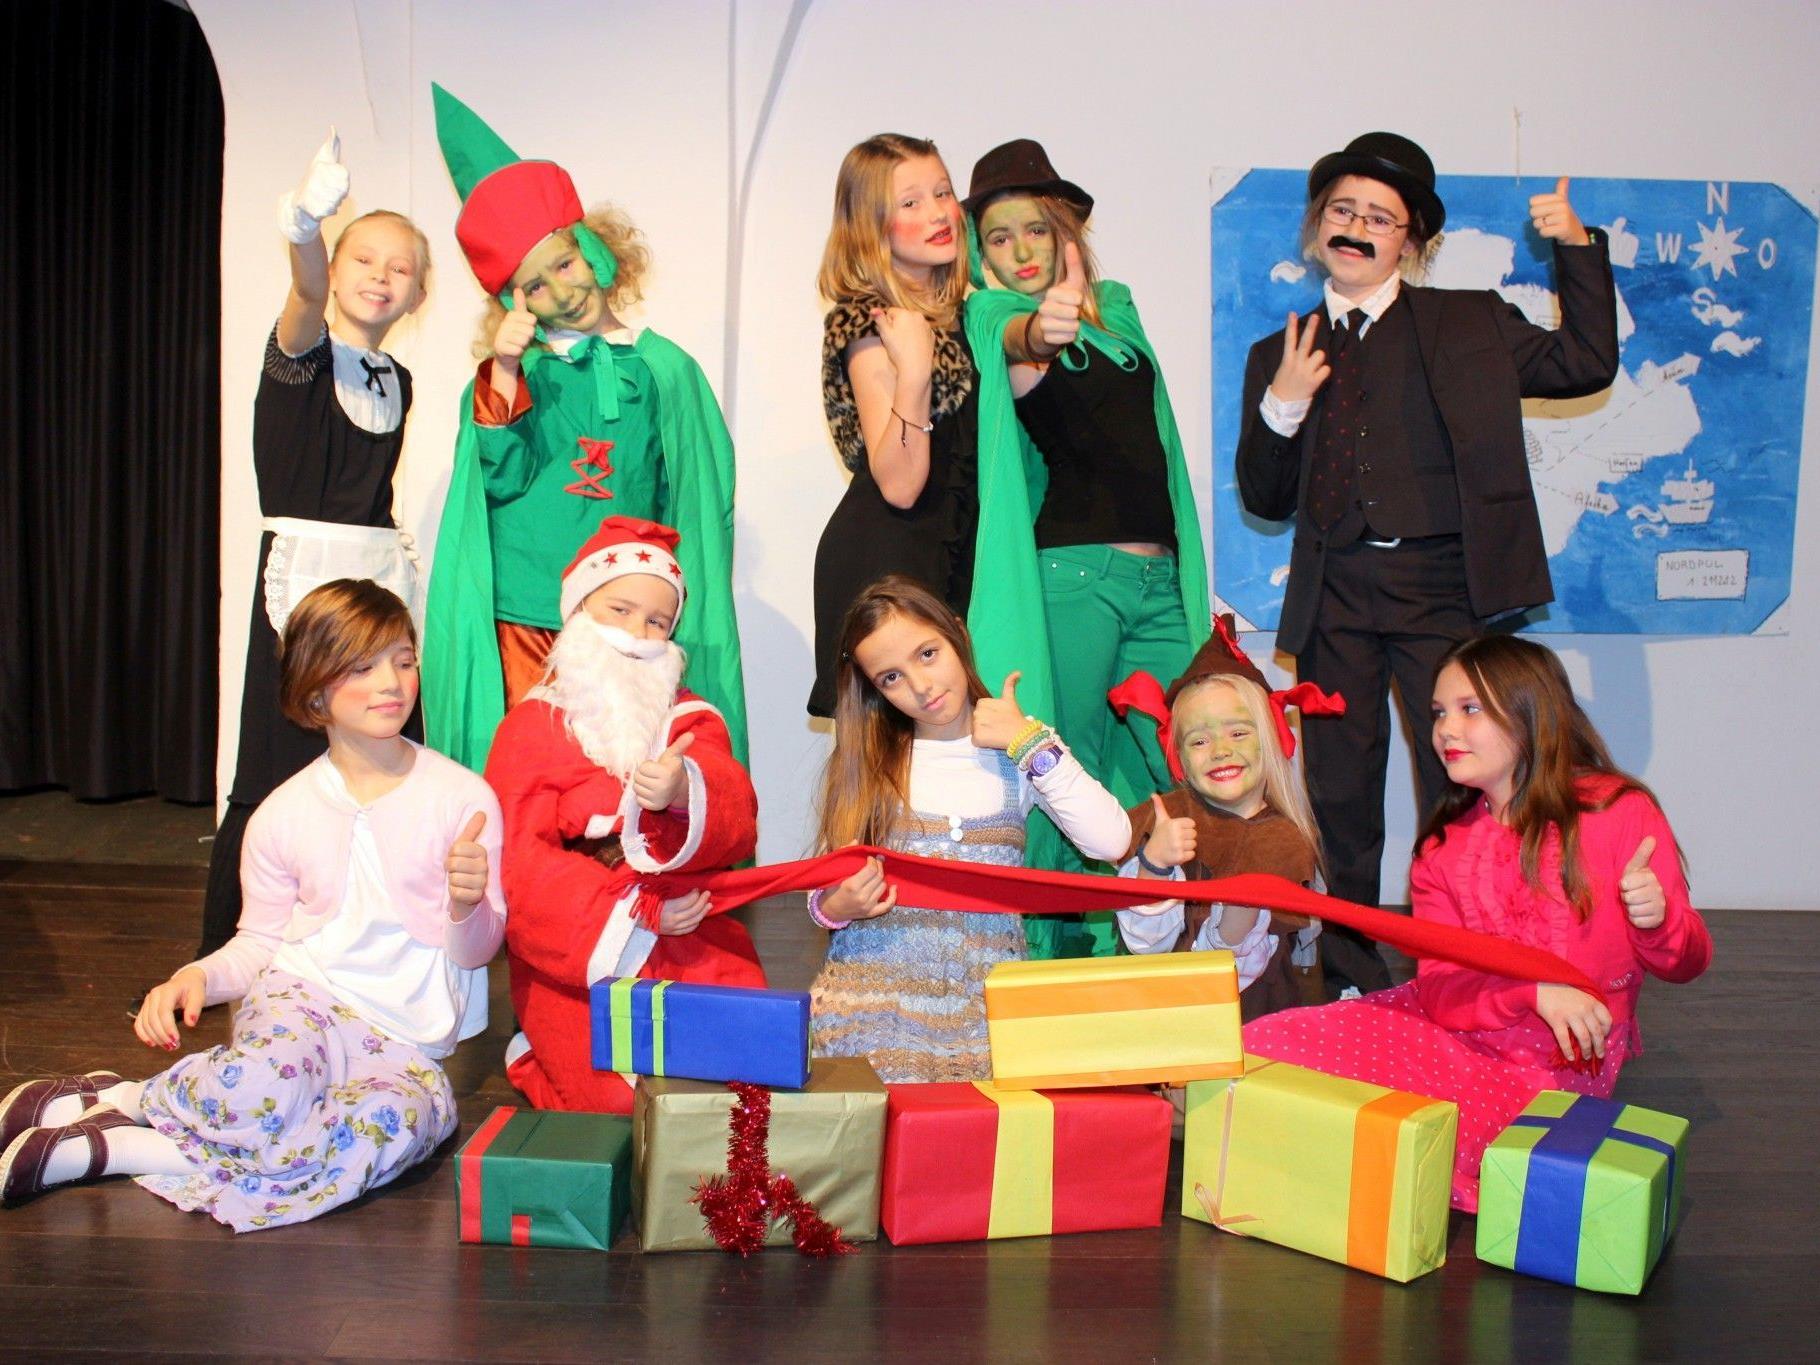 Saumarkt Theaterzwerge - Dezember 2012 - der "rote Schal" - ein tolles, junges Team!